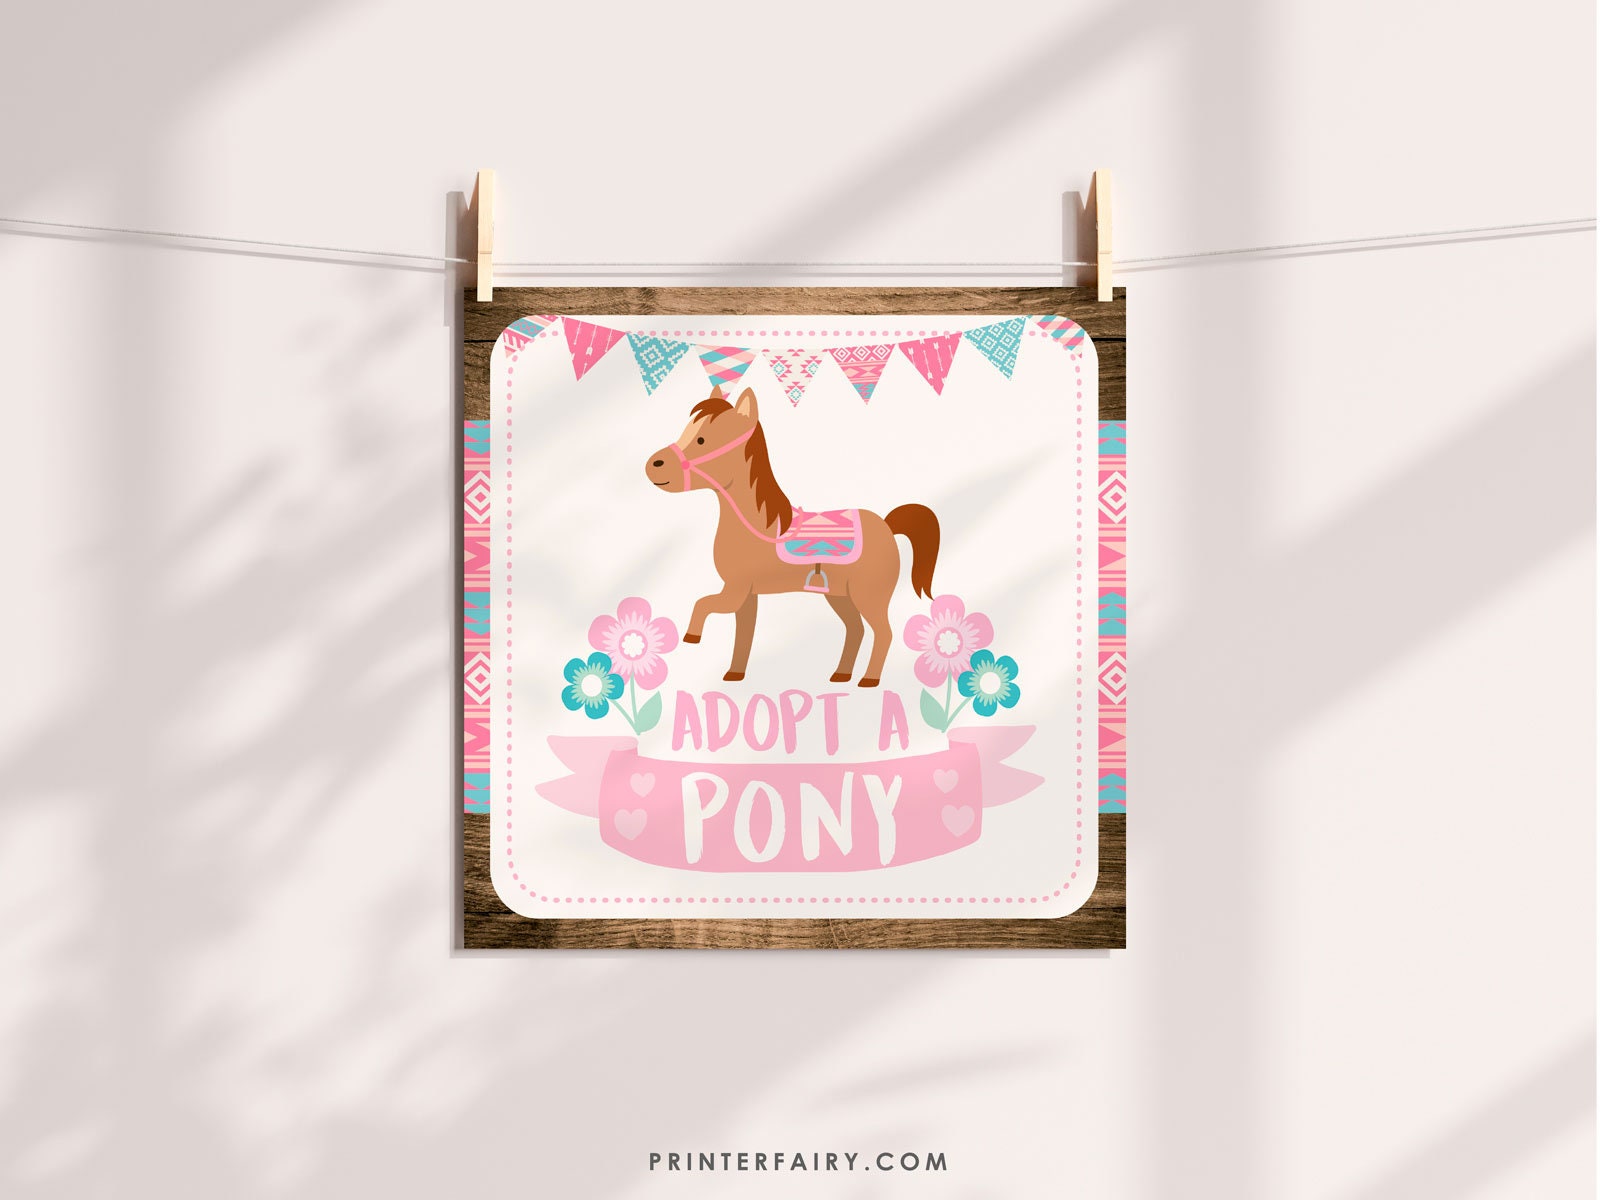 Comment organiser un anniversaire Cheval ou poney ?